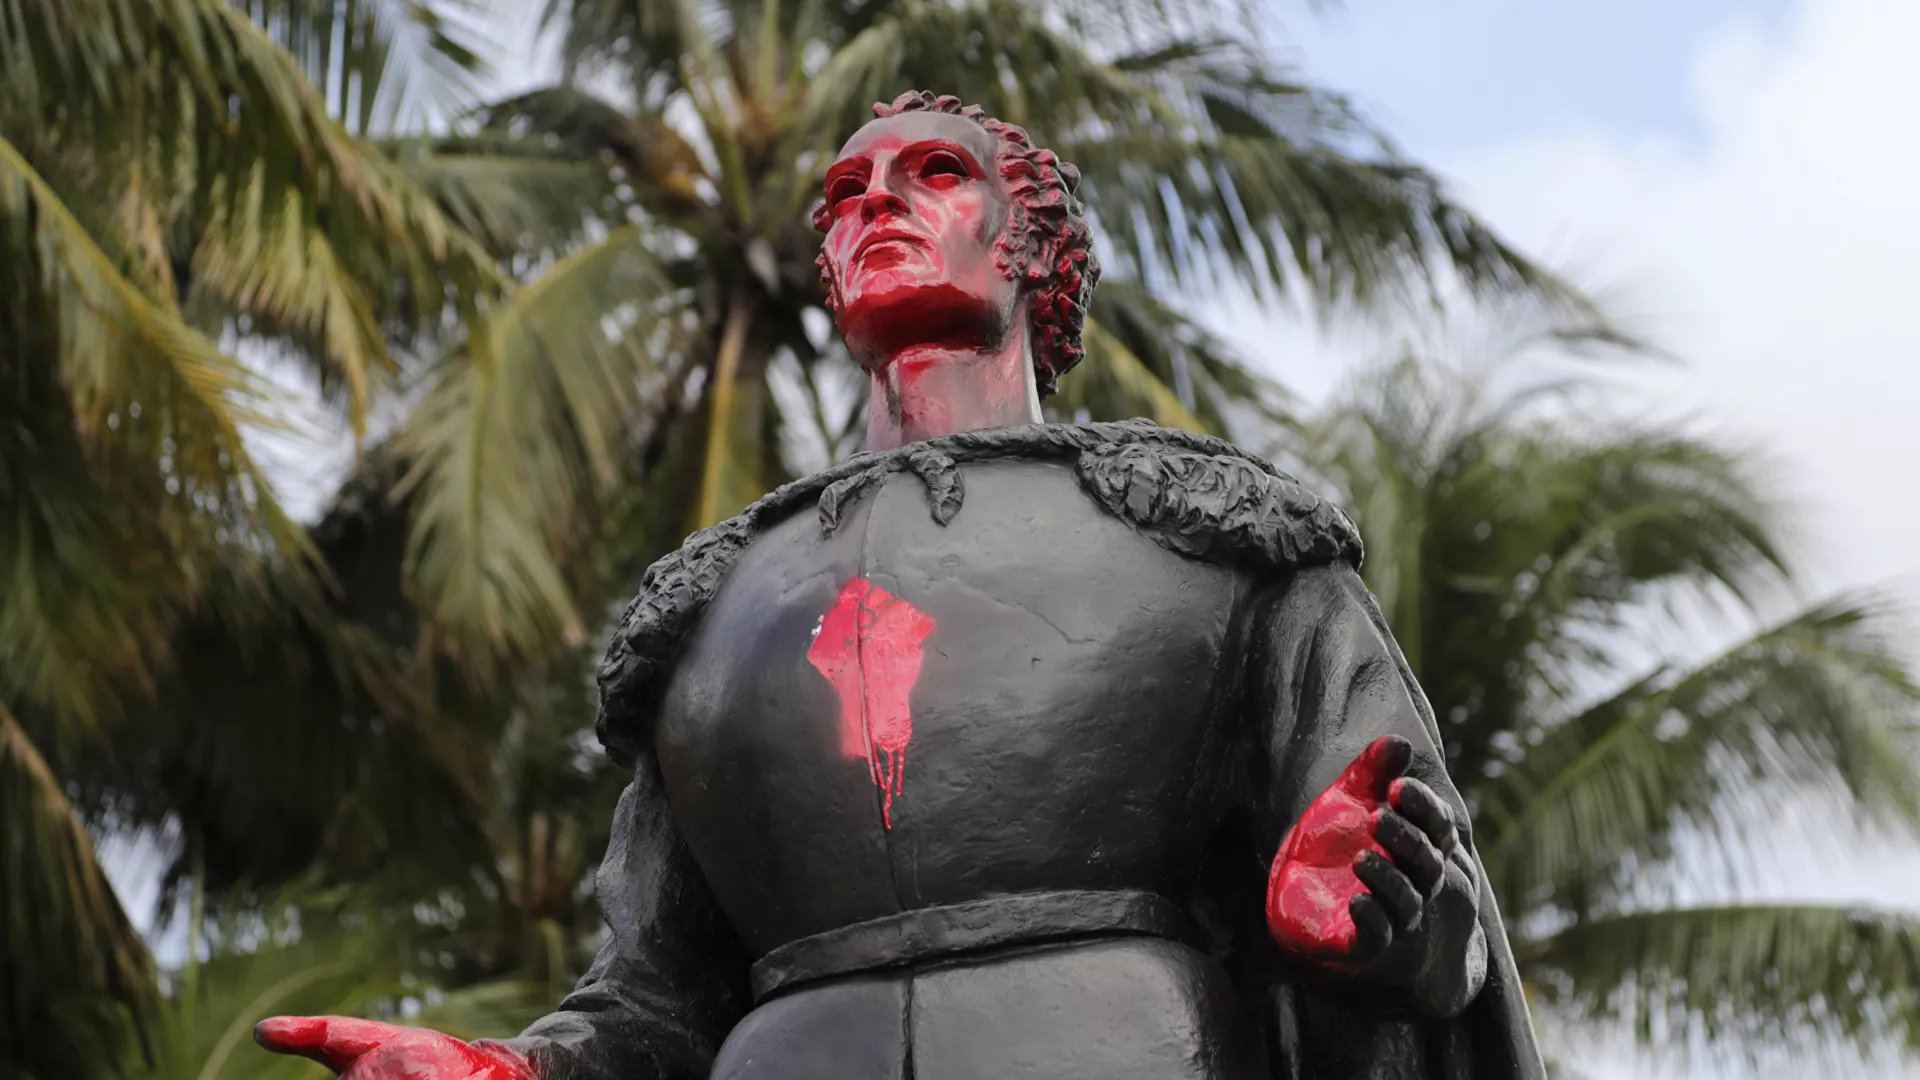 Una estatua de Cristóbal Colón en Miami - Sputnik Mundo, 1920, 11.05.2021